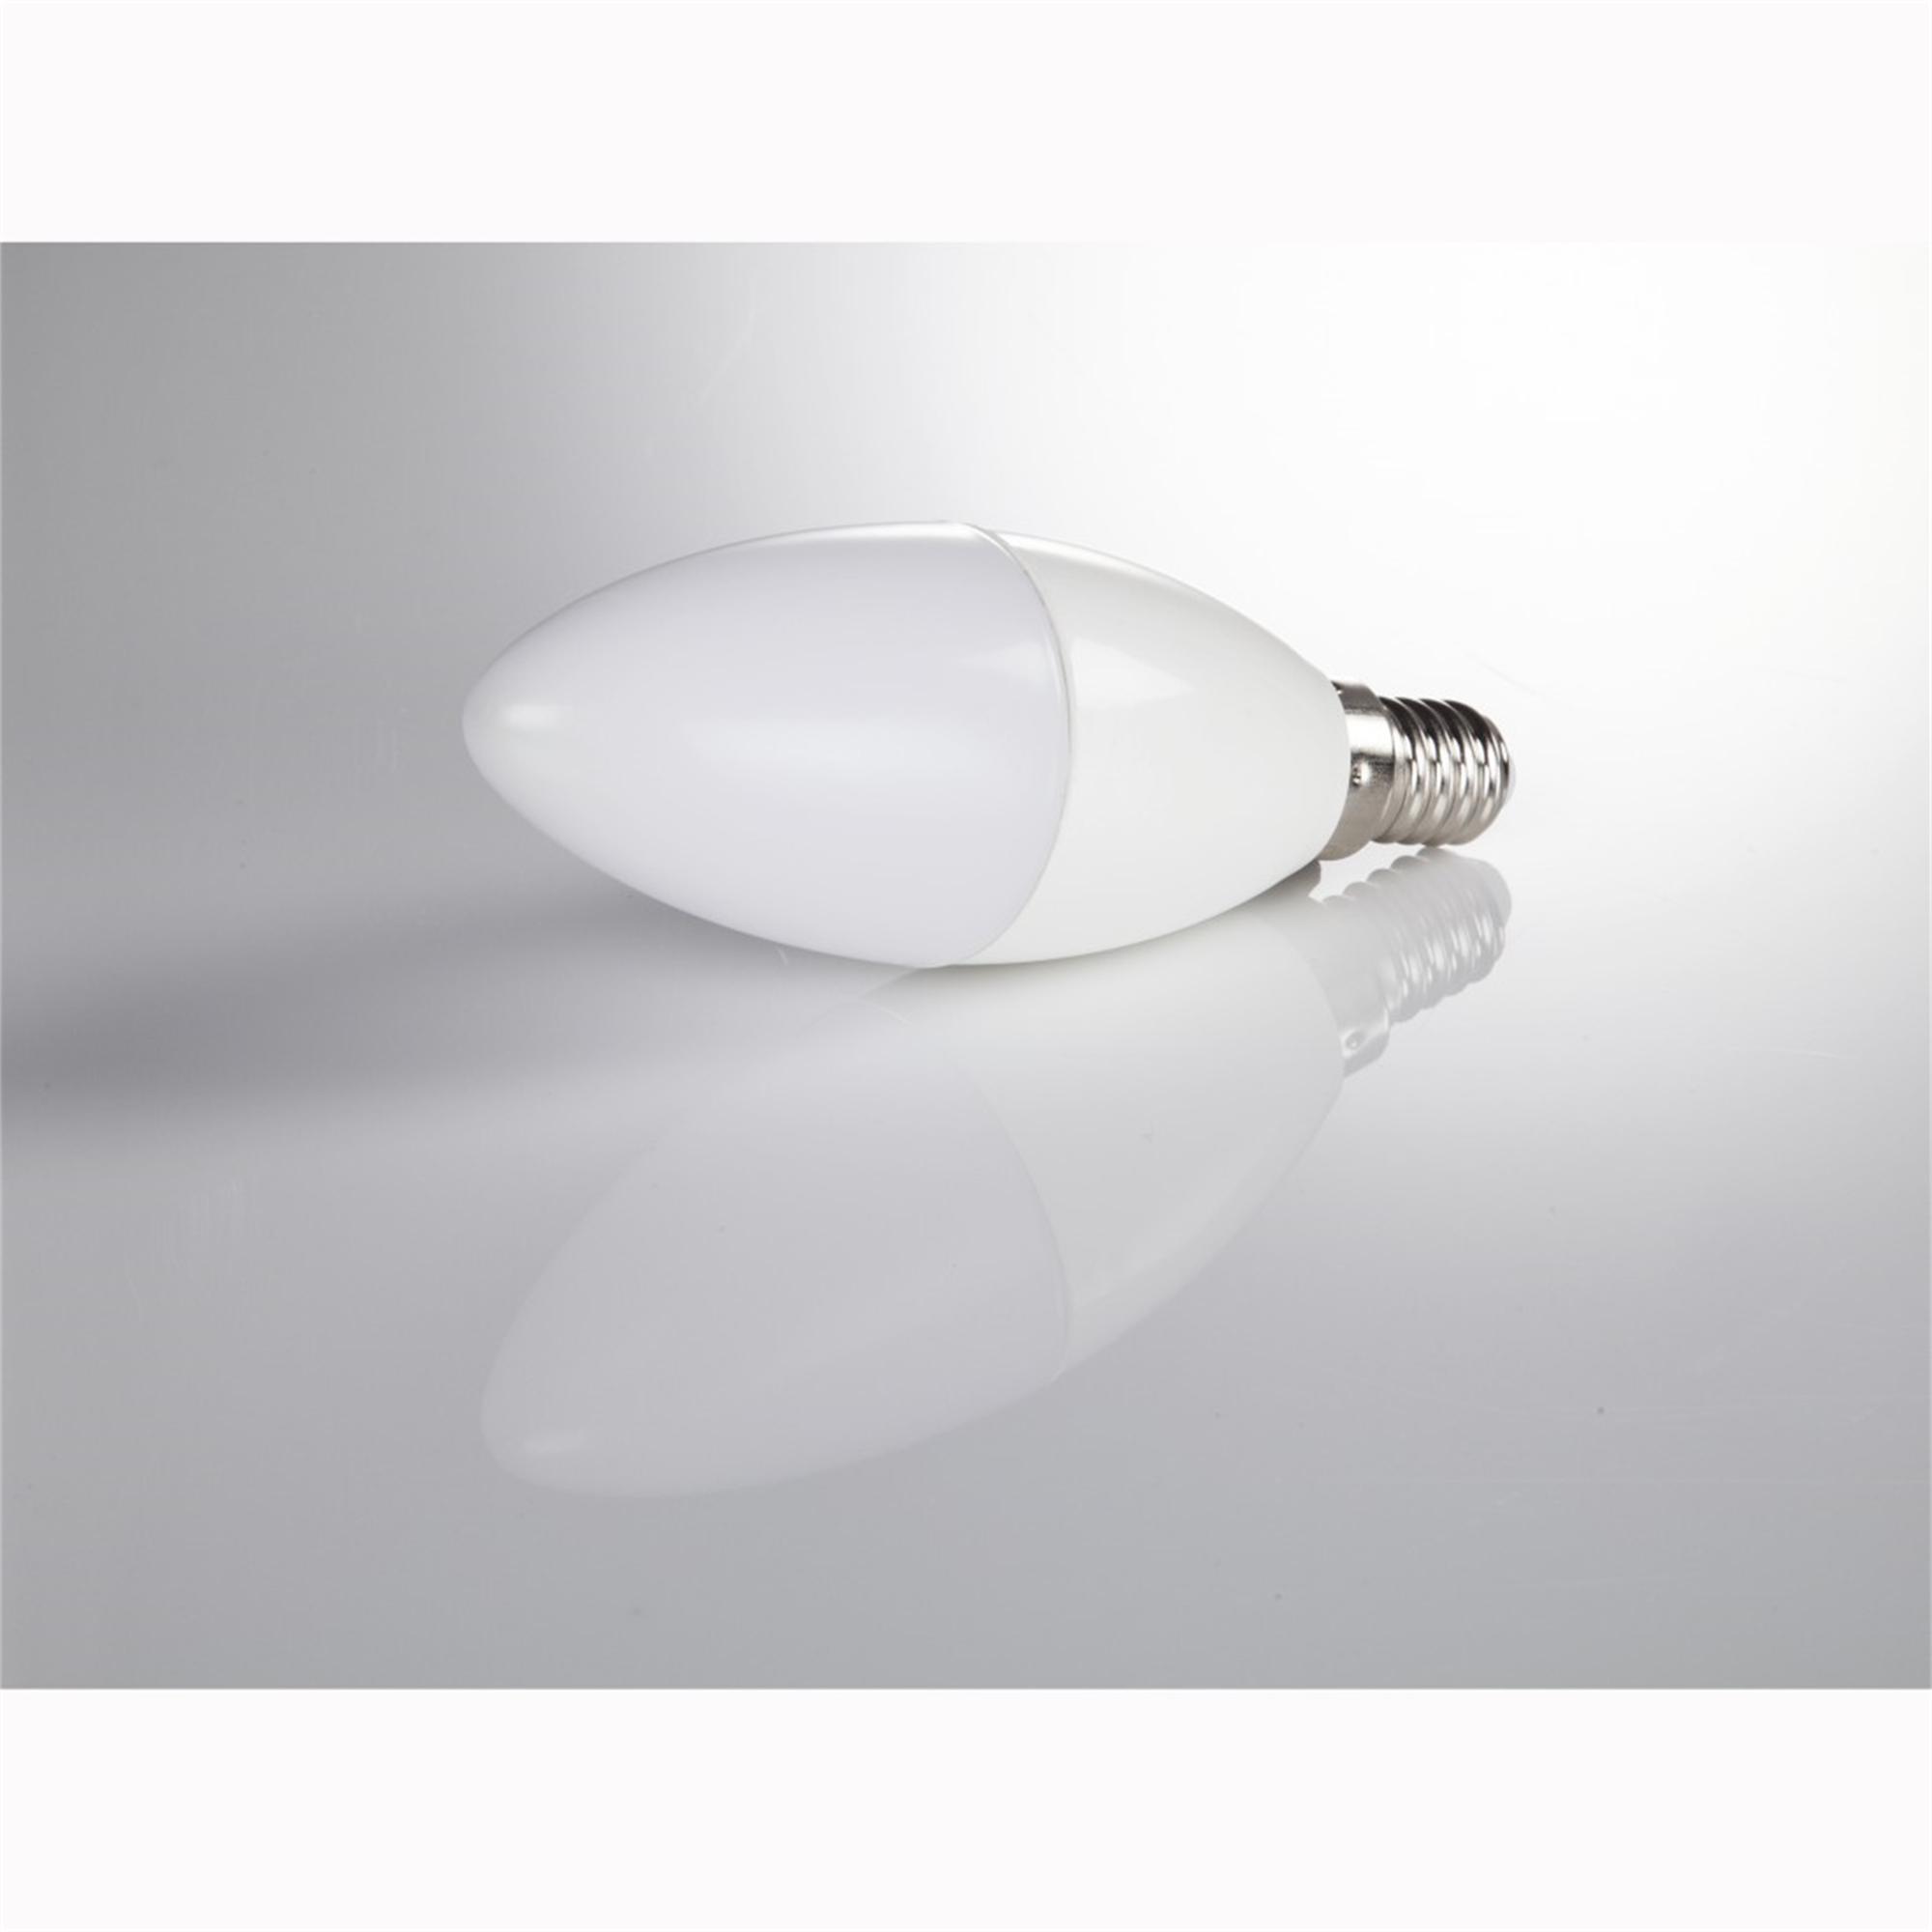 XAVAX E14, 806lm E14 LED-Lampe ersetzt Warmweiß 60W